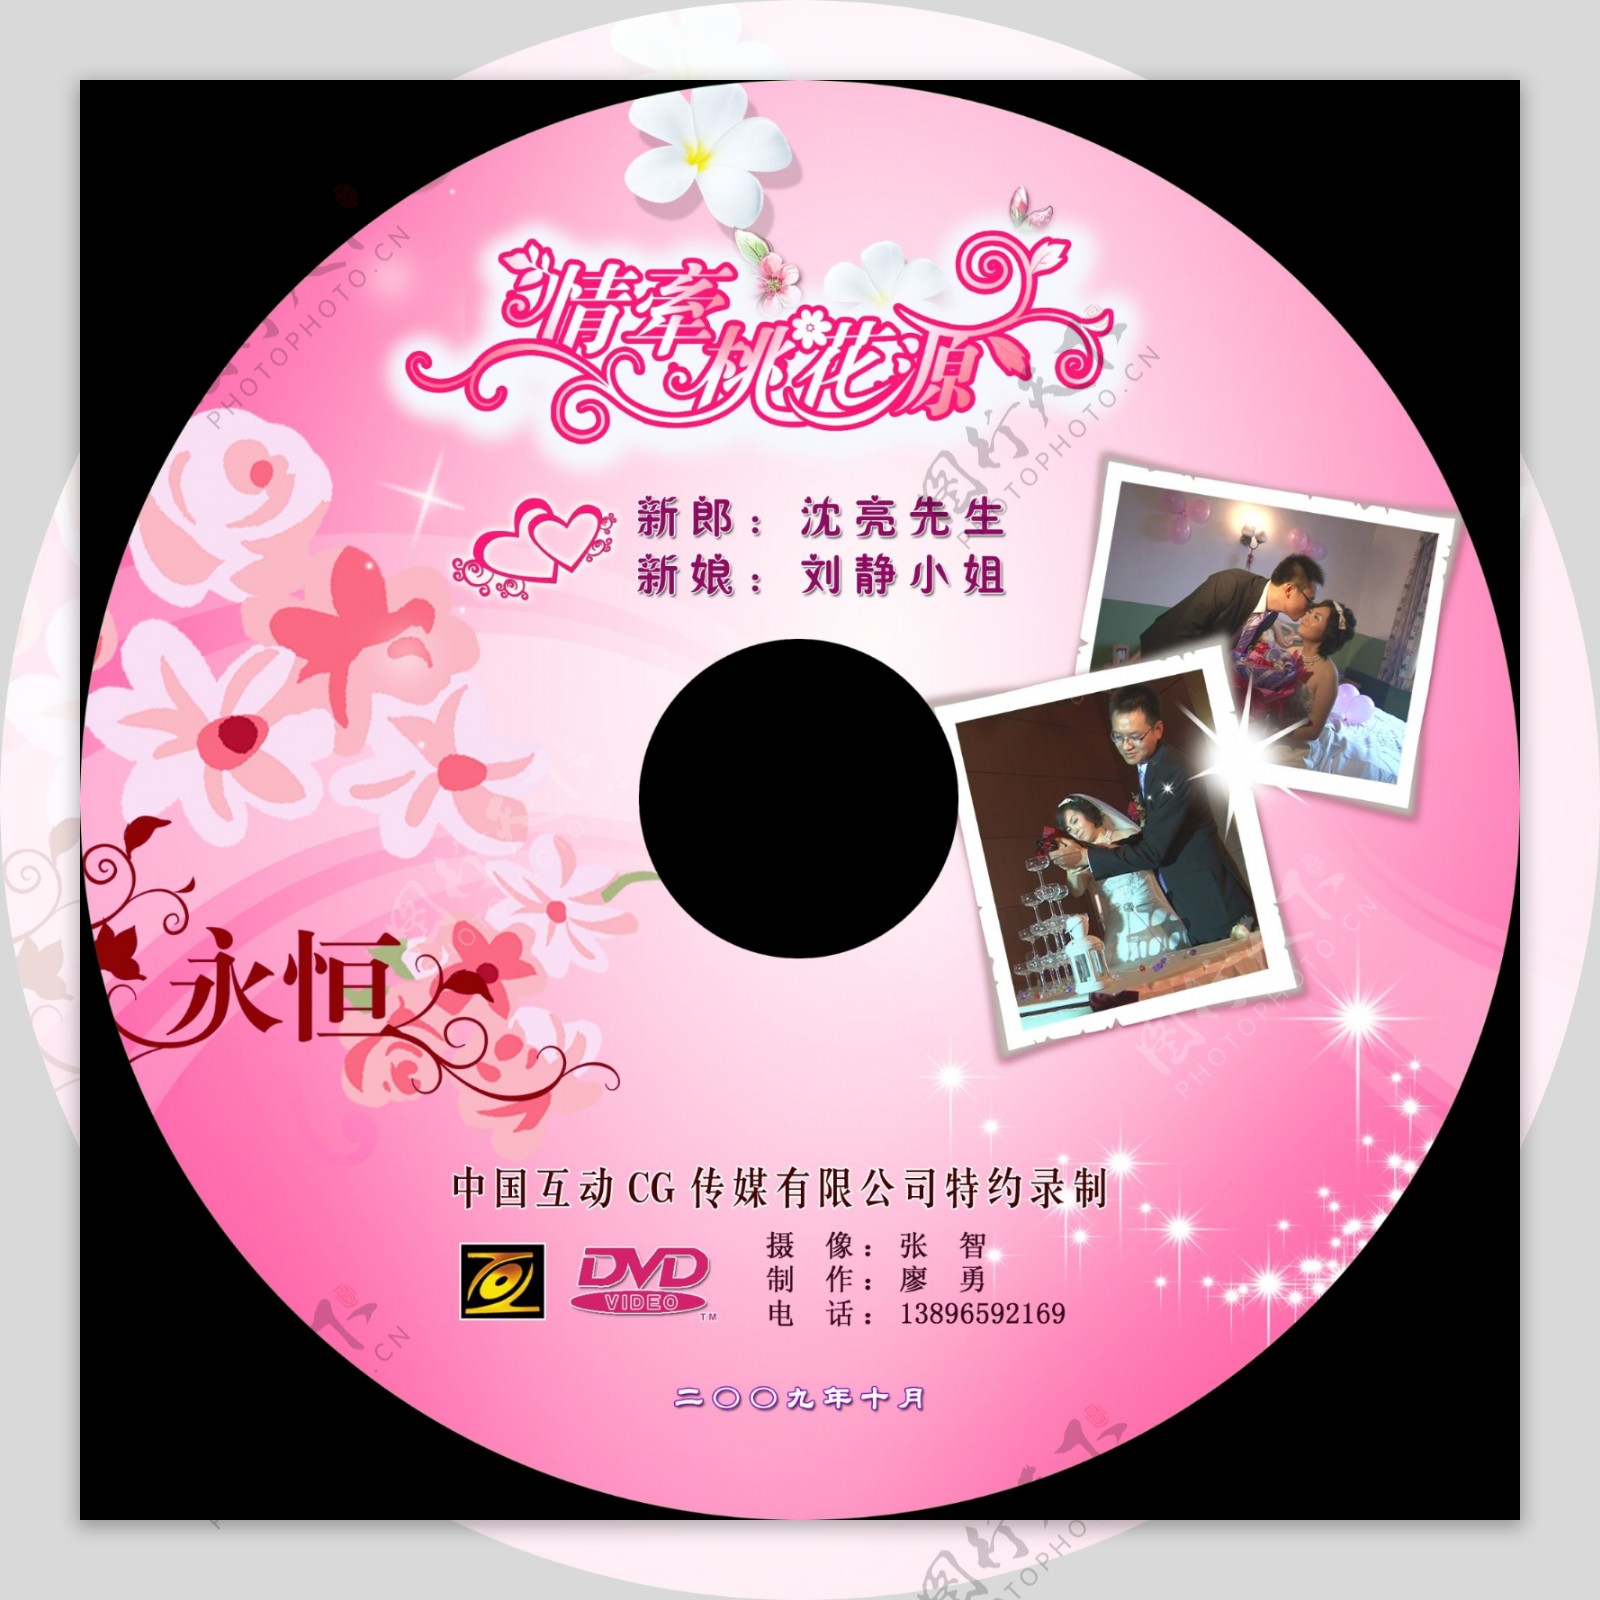 婚礼dvdcd标签dvd封面情牵桃花源图片